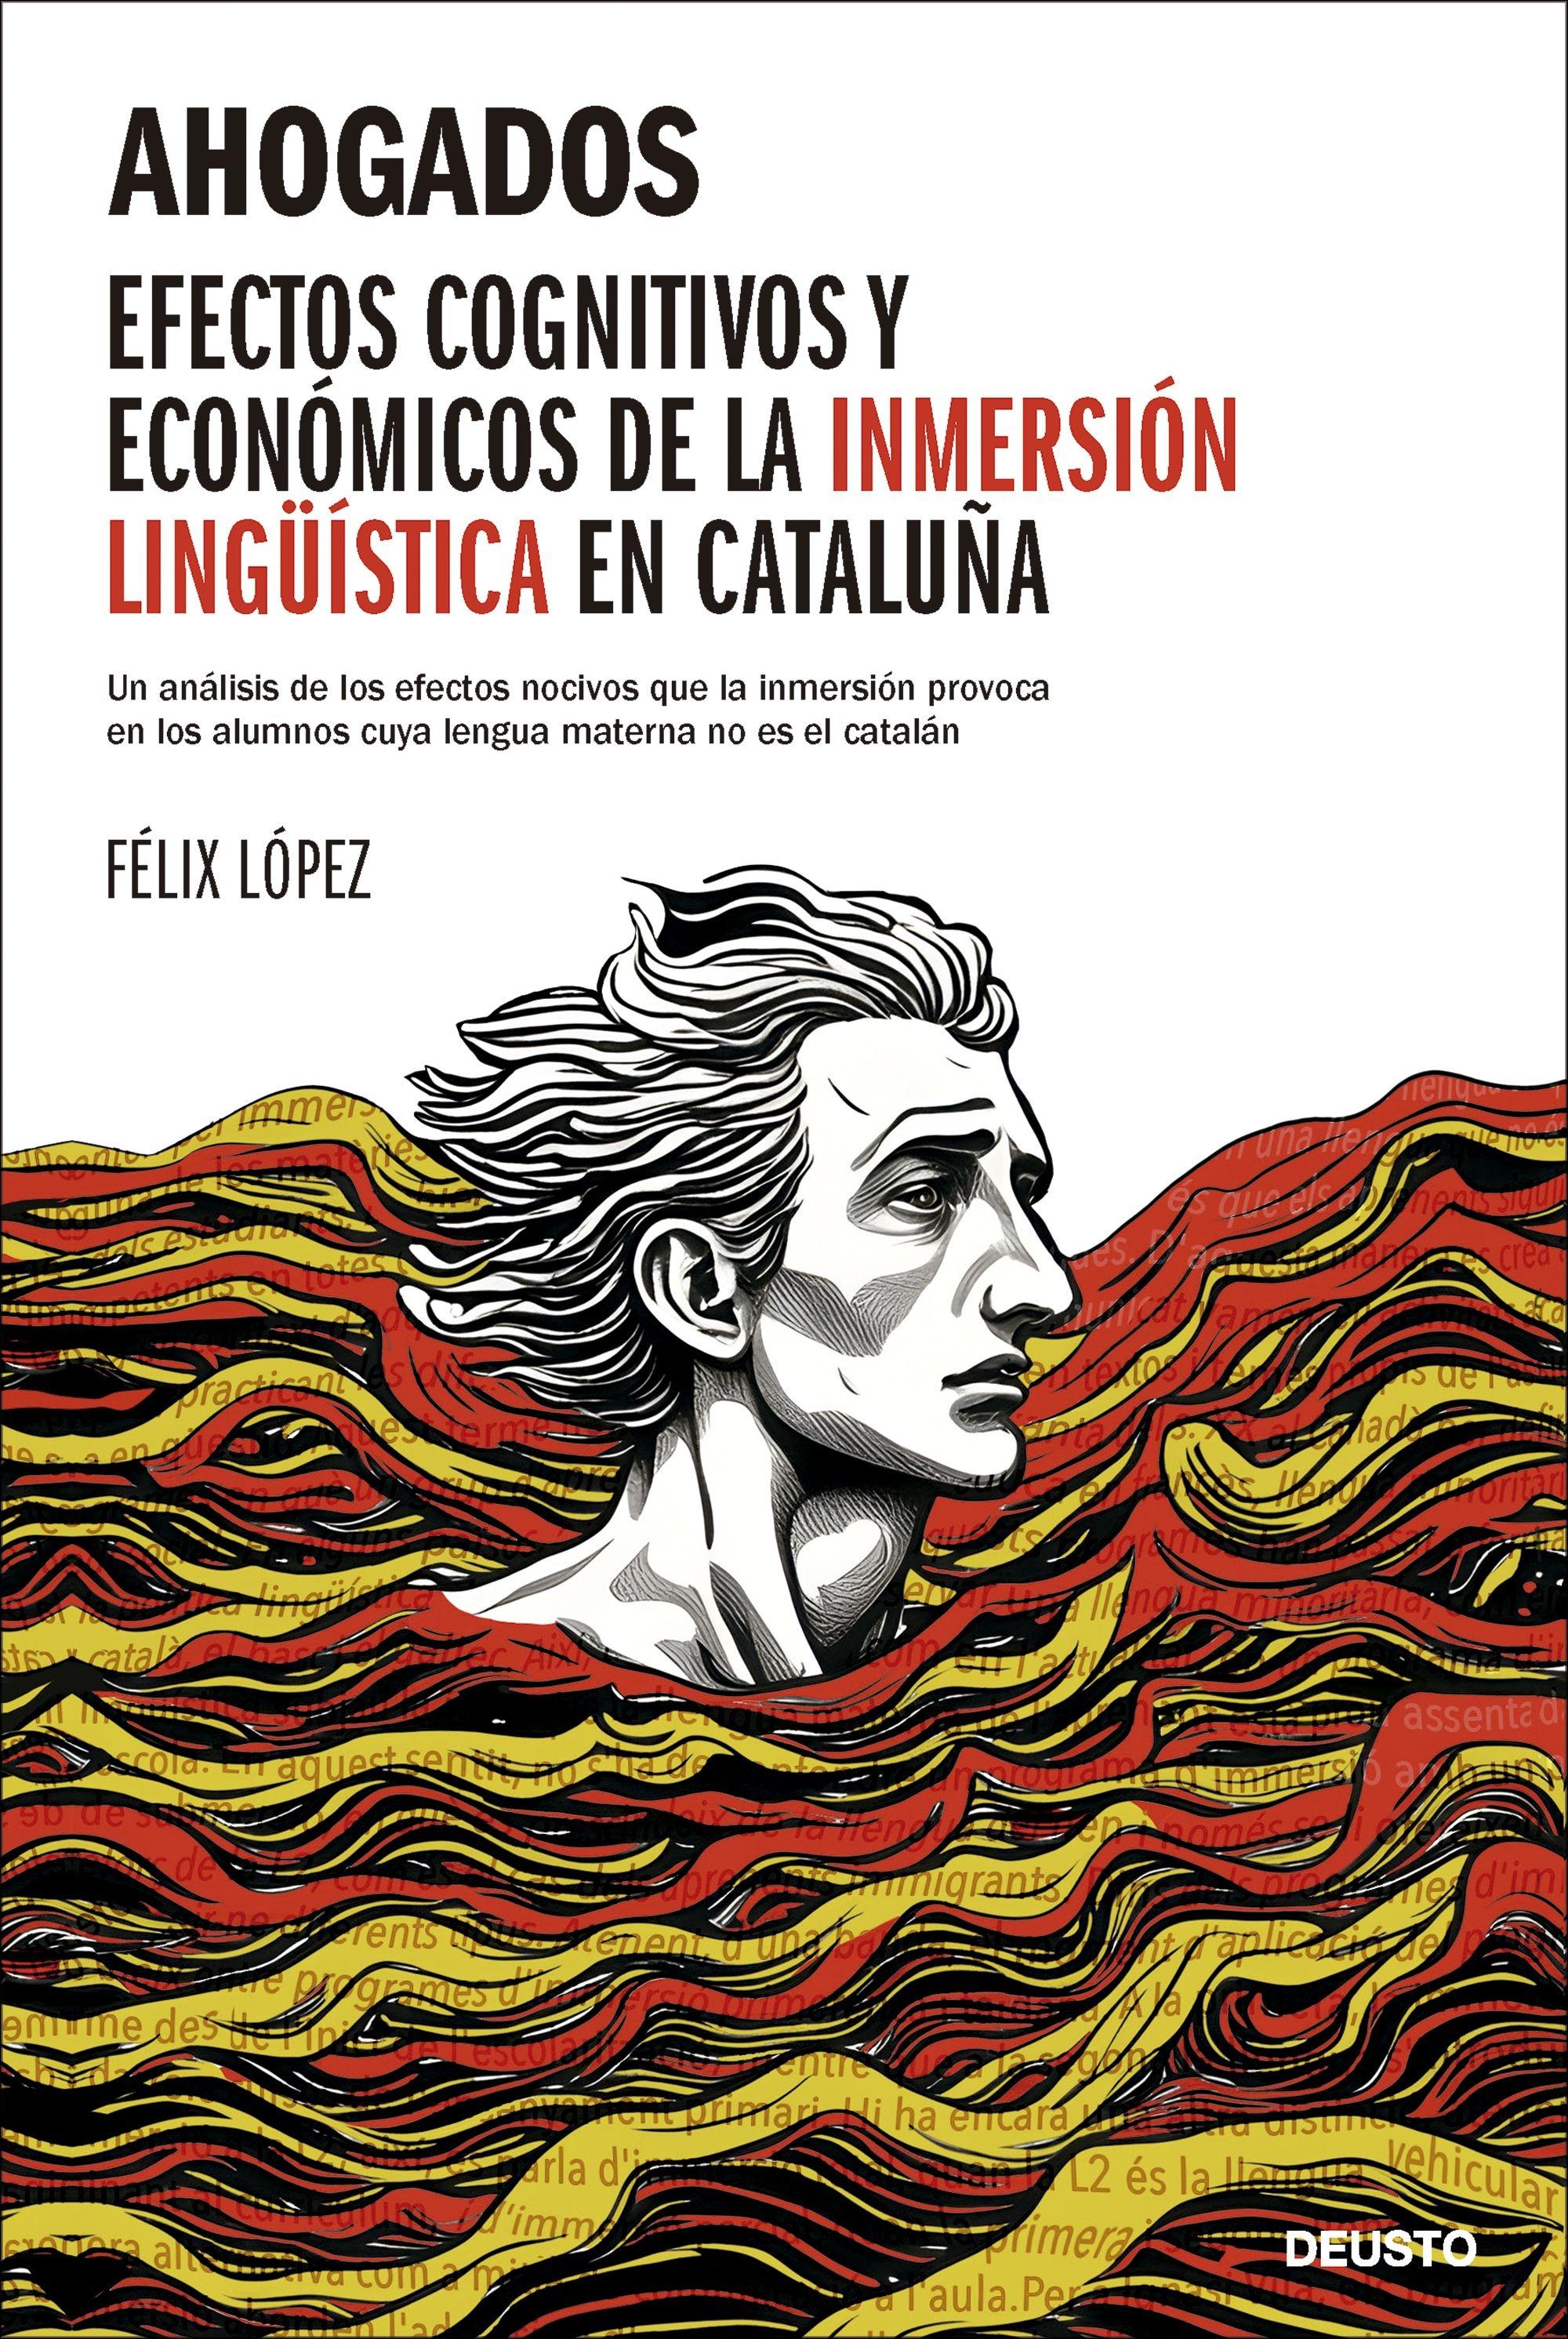 Ahogados "Efectos Cognitivos y Económicos de la Inmersión Lingüística en Cataluña"